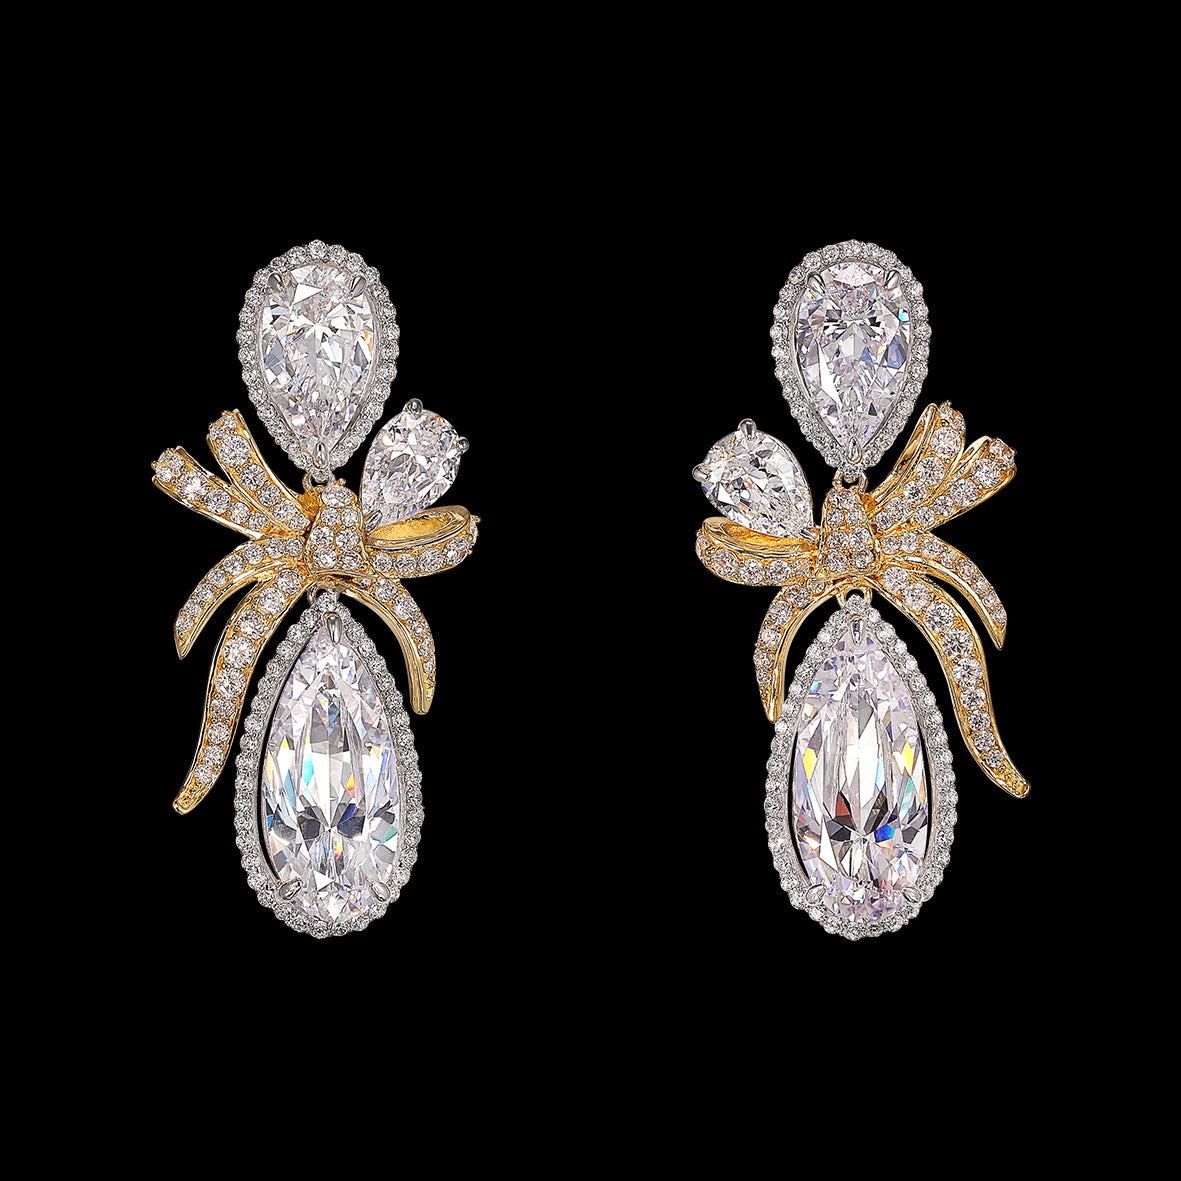 SPAZIES 925 silver luxury drop earrings for women white diamond fine jewelry